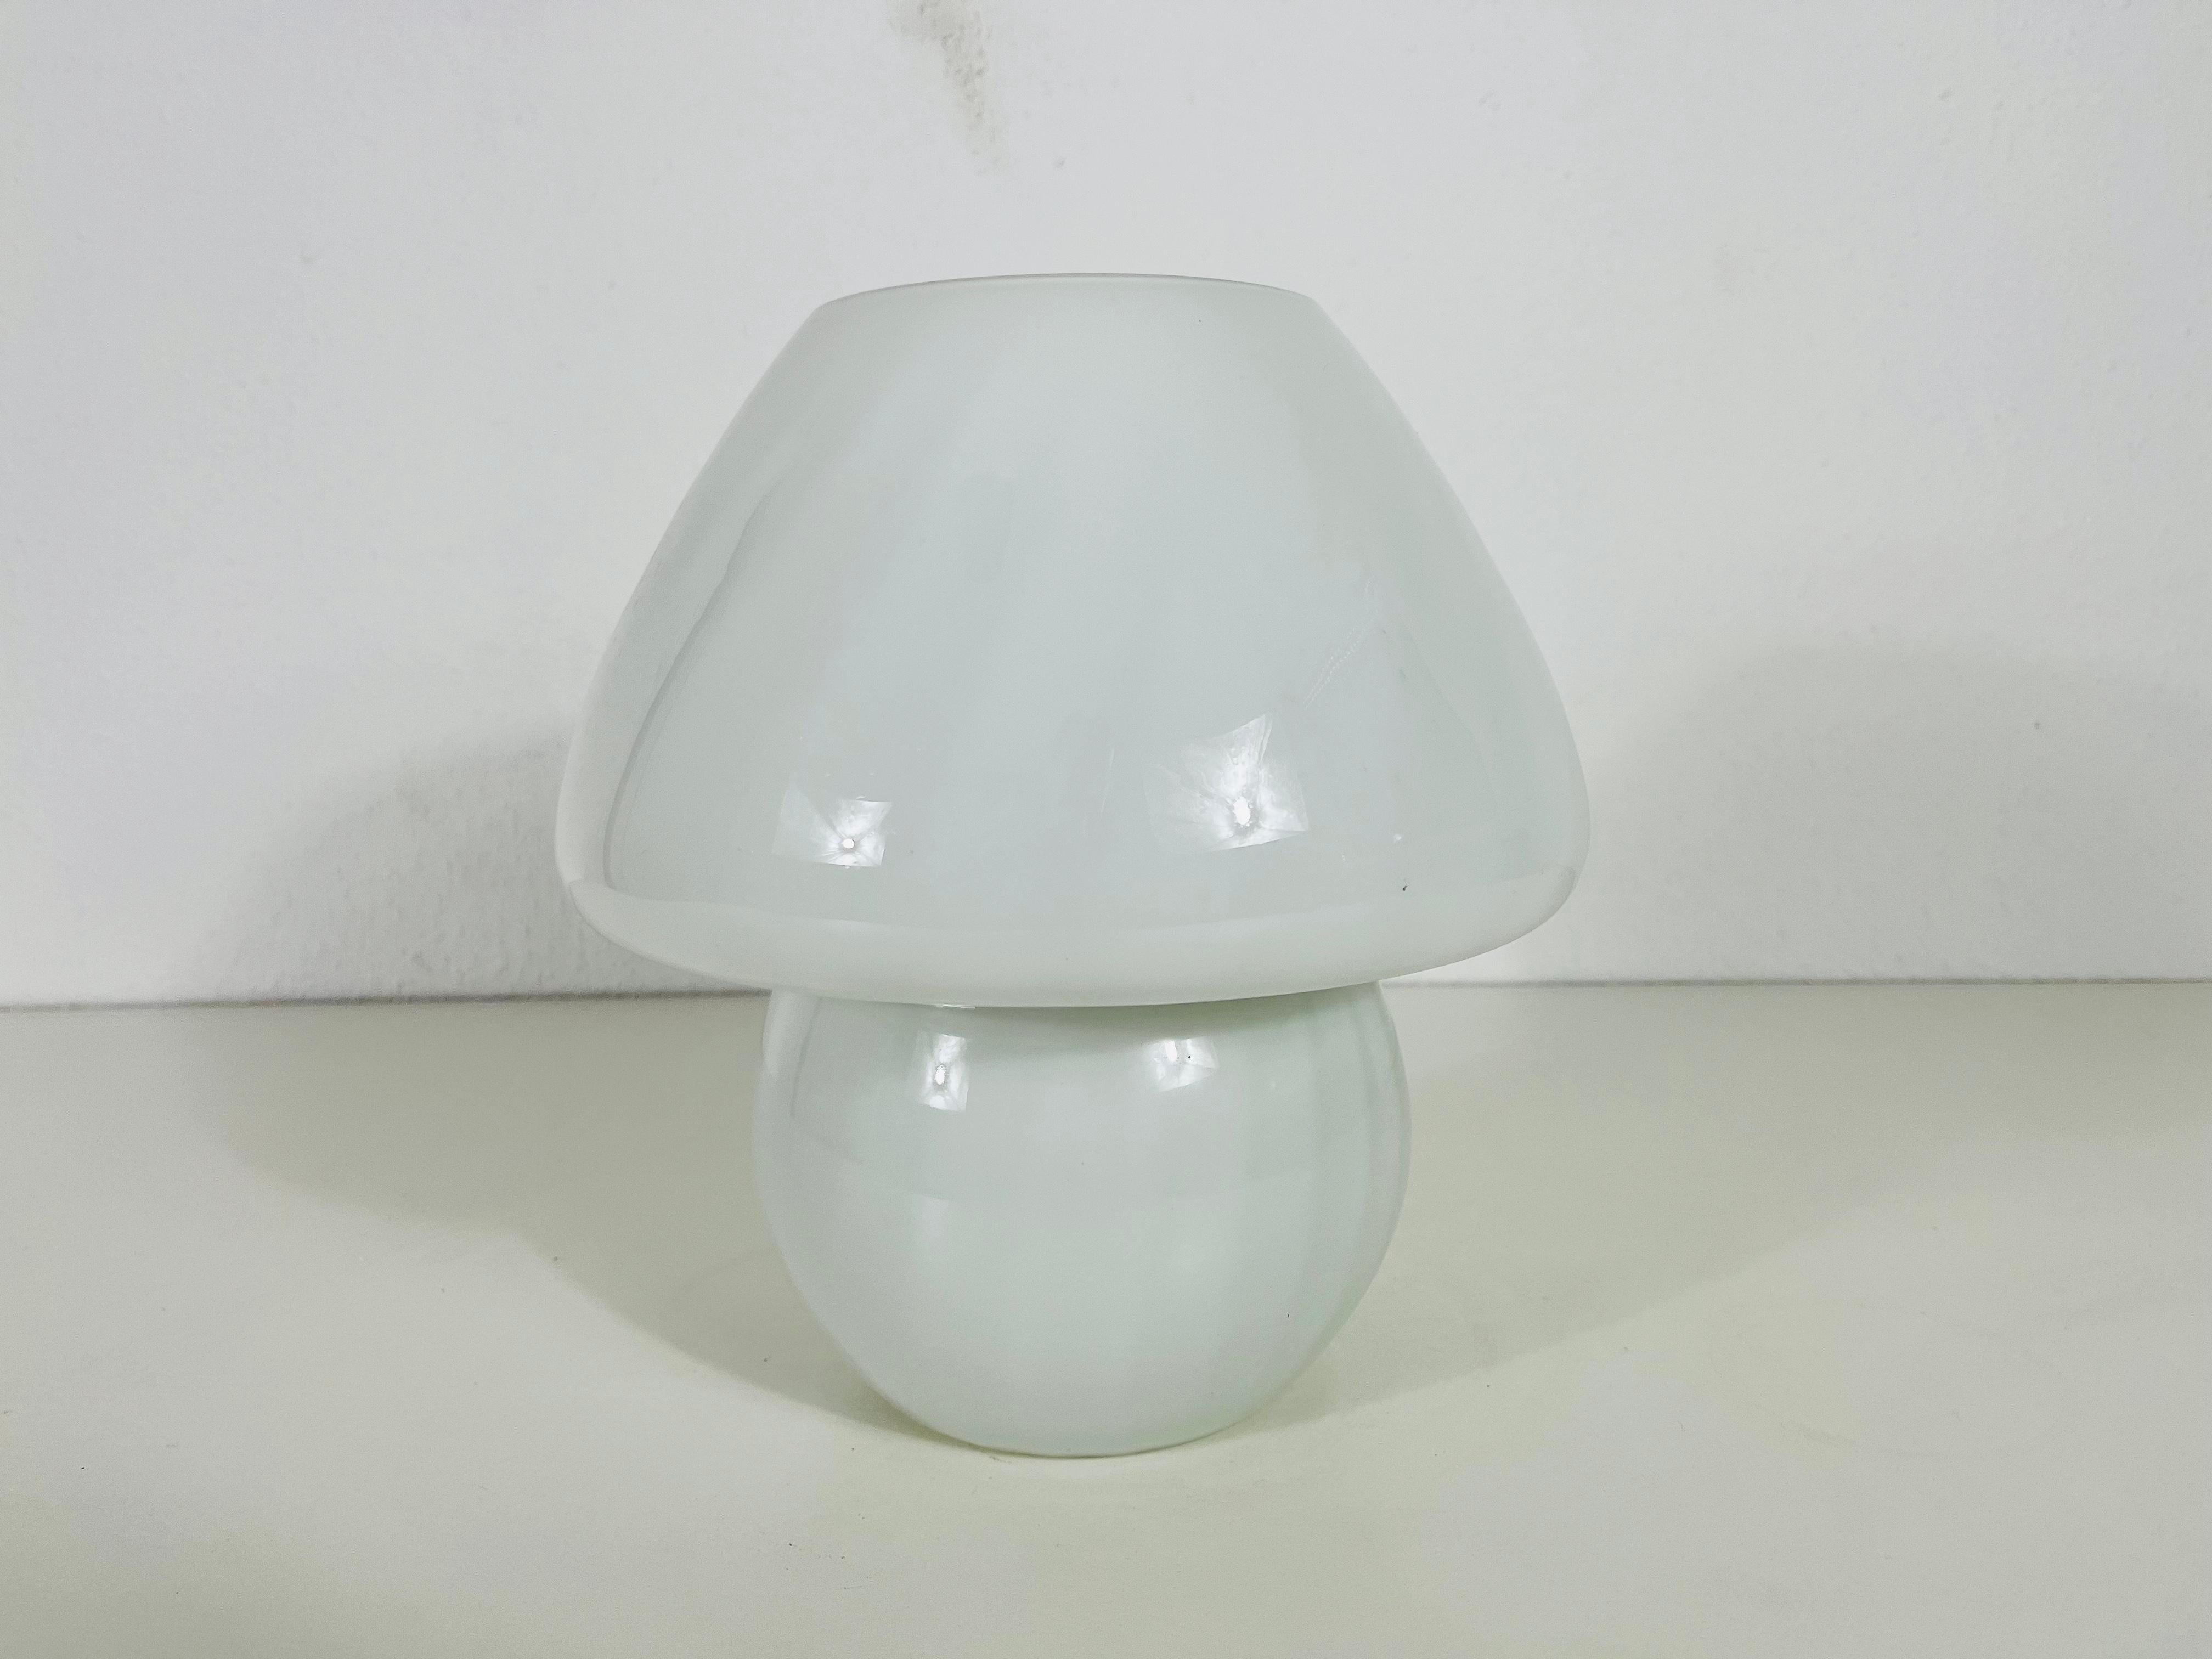 Belle lampe de table italienne par Vetri d'Arte Murano. Il a une forme extraordinaire de champignon. Très bon état vintage.

Les lampes nécessitent une ampoule E27. Fonctionne avec les deux 220/120 V. Très bon état vintage.

Expédition gratuite